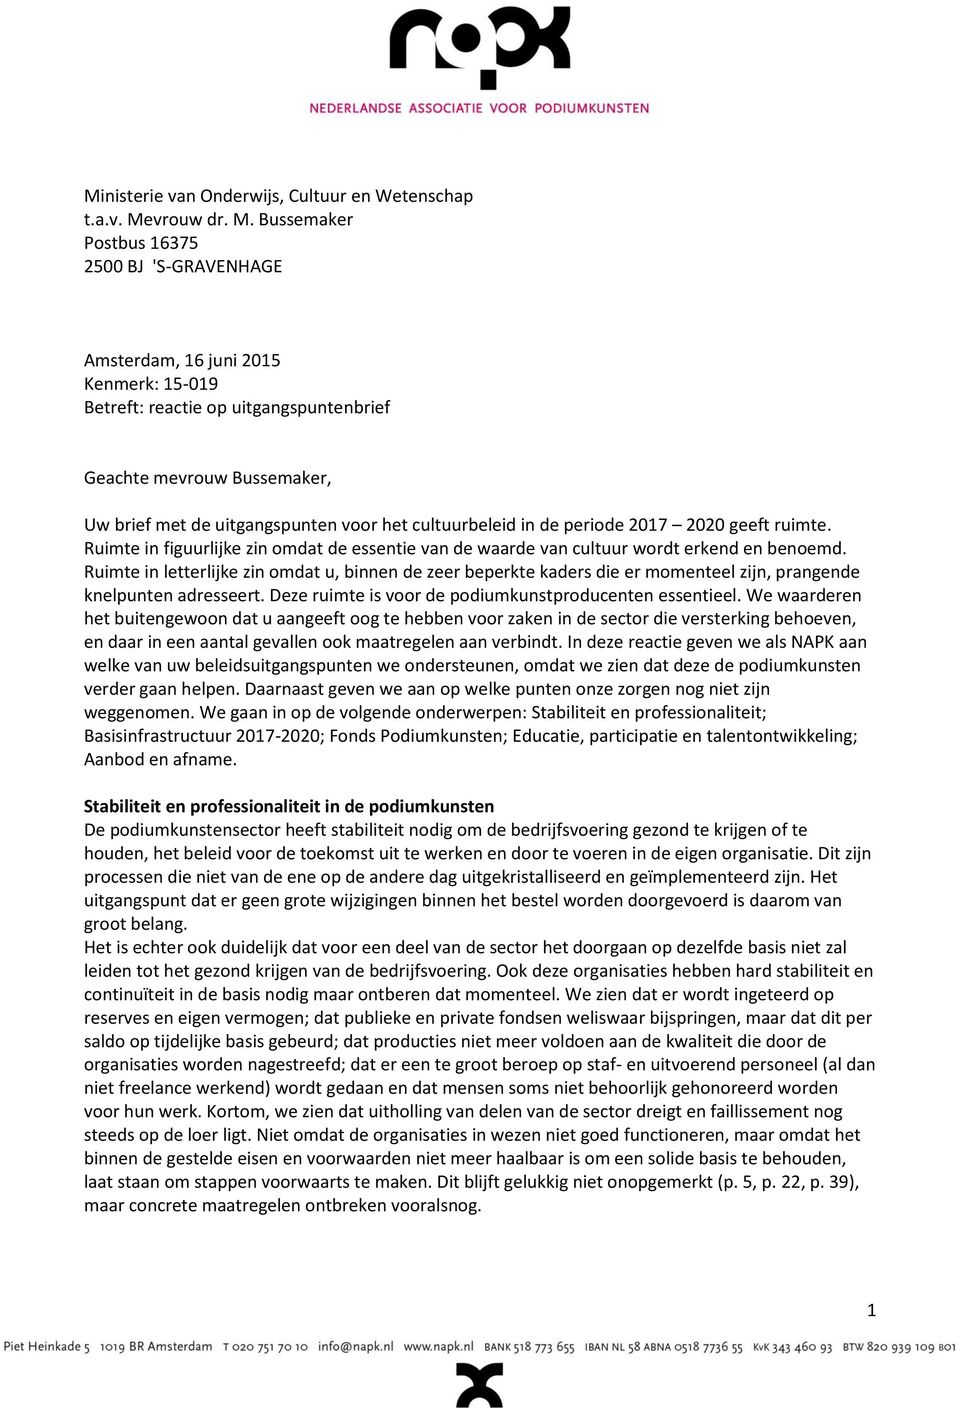 Bussemaker Postbus 16375 2500 BJ 'S-GRAVENHAGE Amsterdam, 16 juni 2015 Kenmerk: 15-019 Betreft: reactie op uitgangspuntenbrief Geachte mevrouw Bussemaker, Uw brief met de uitgangspunten voor het